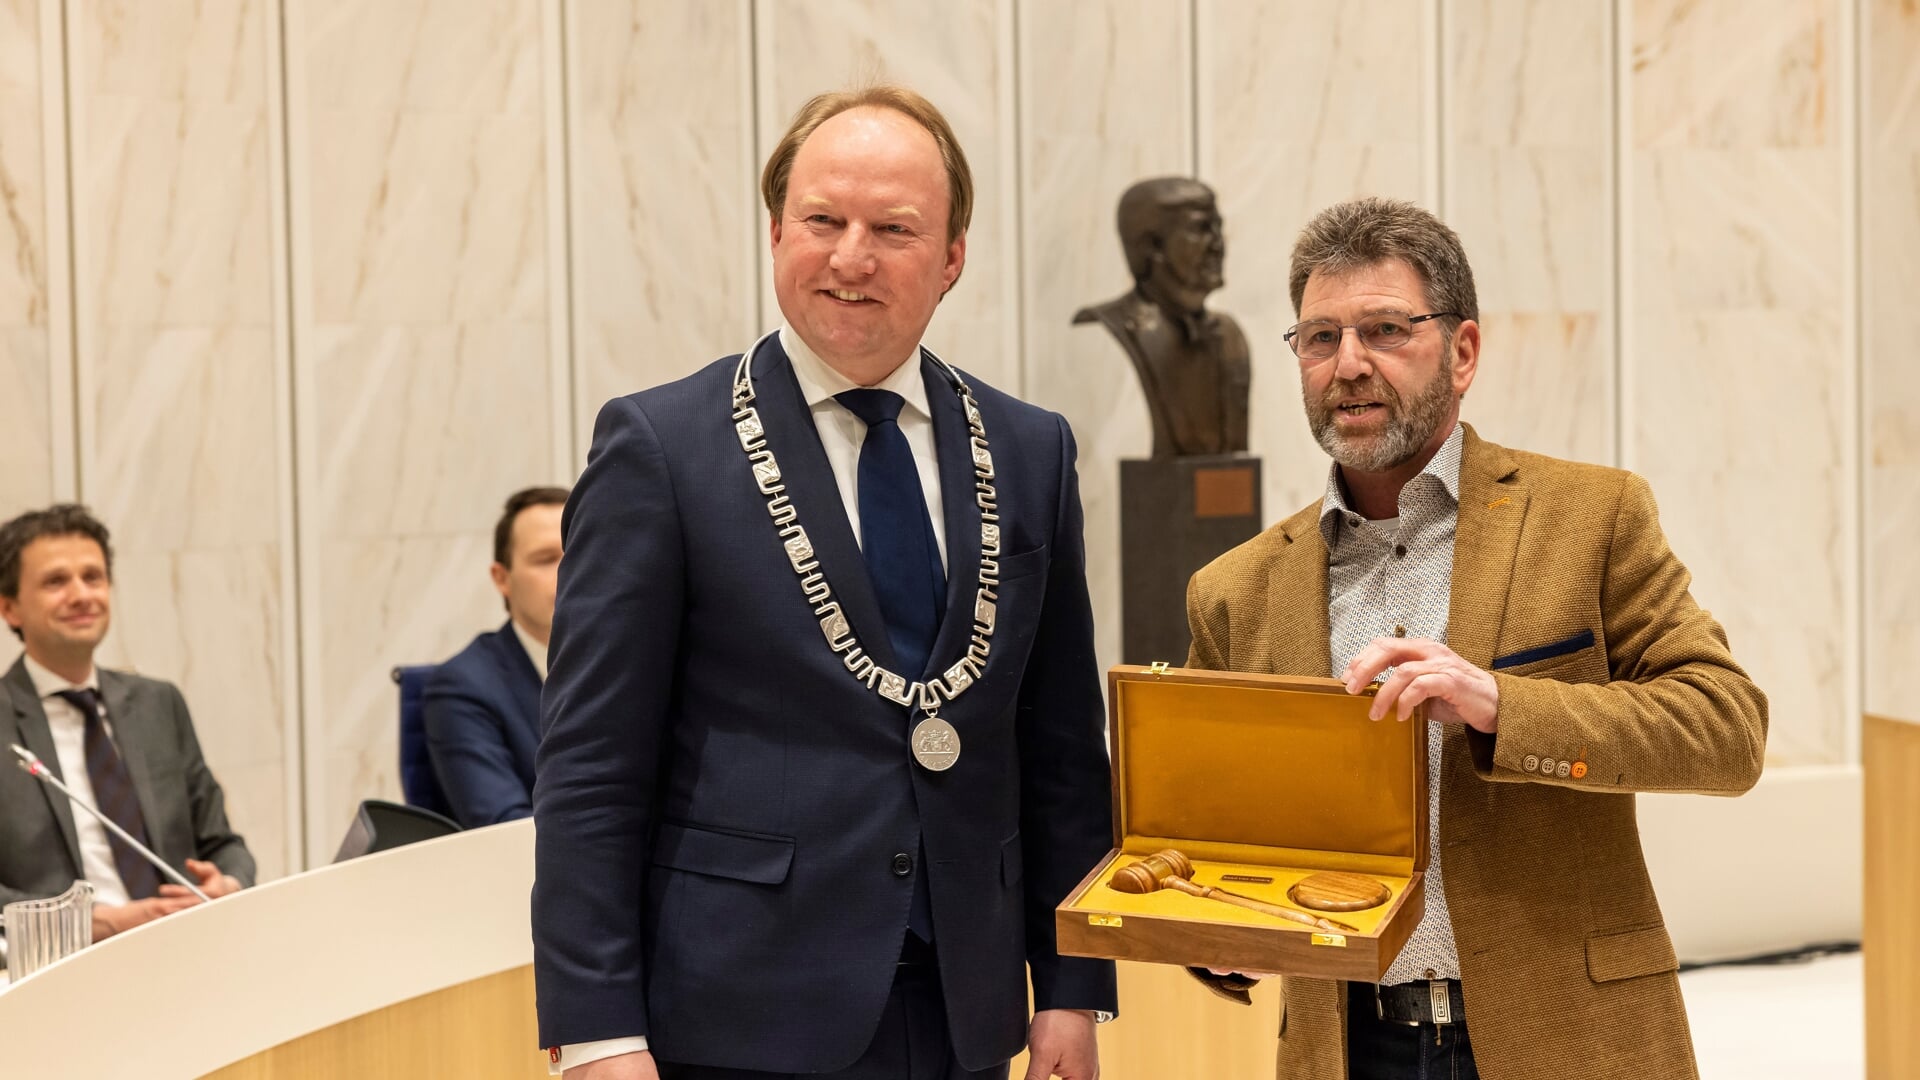 Burgemeester Van der Loo kreeg een nieuwe voorzittershamer van Willem Boutkan, voorzitter van het presidium (Foto: Maarten Feenstra)